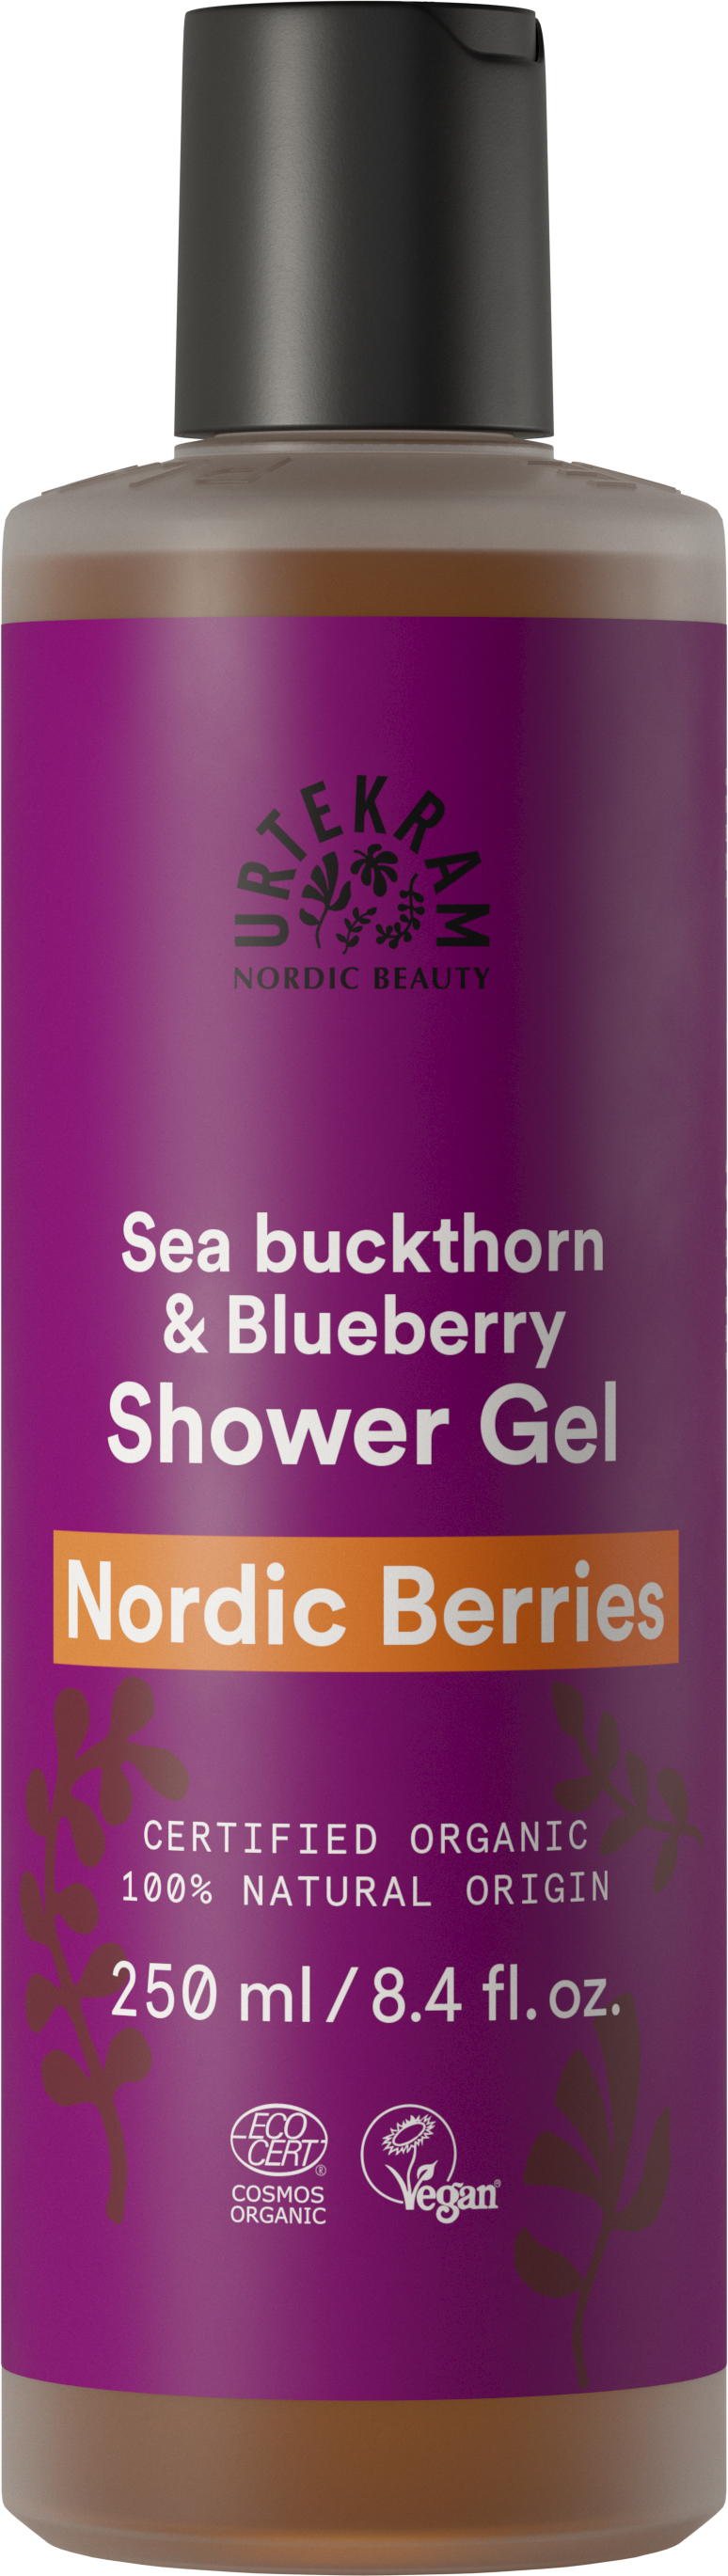 Nordic Berries Douchegel 250 ml - Urtekram